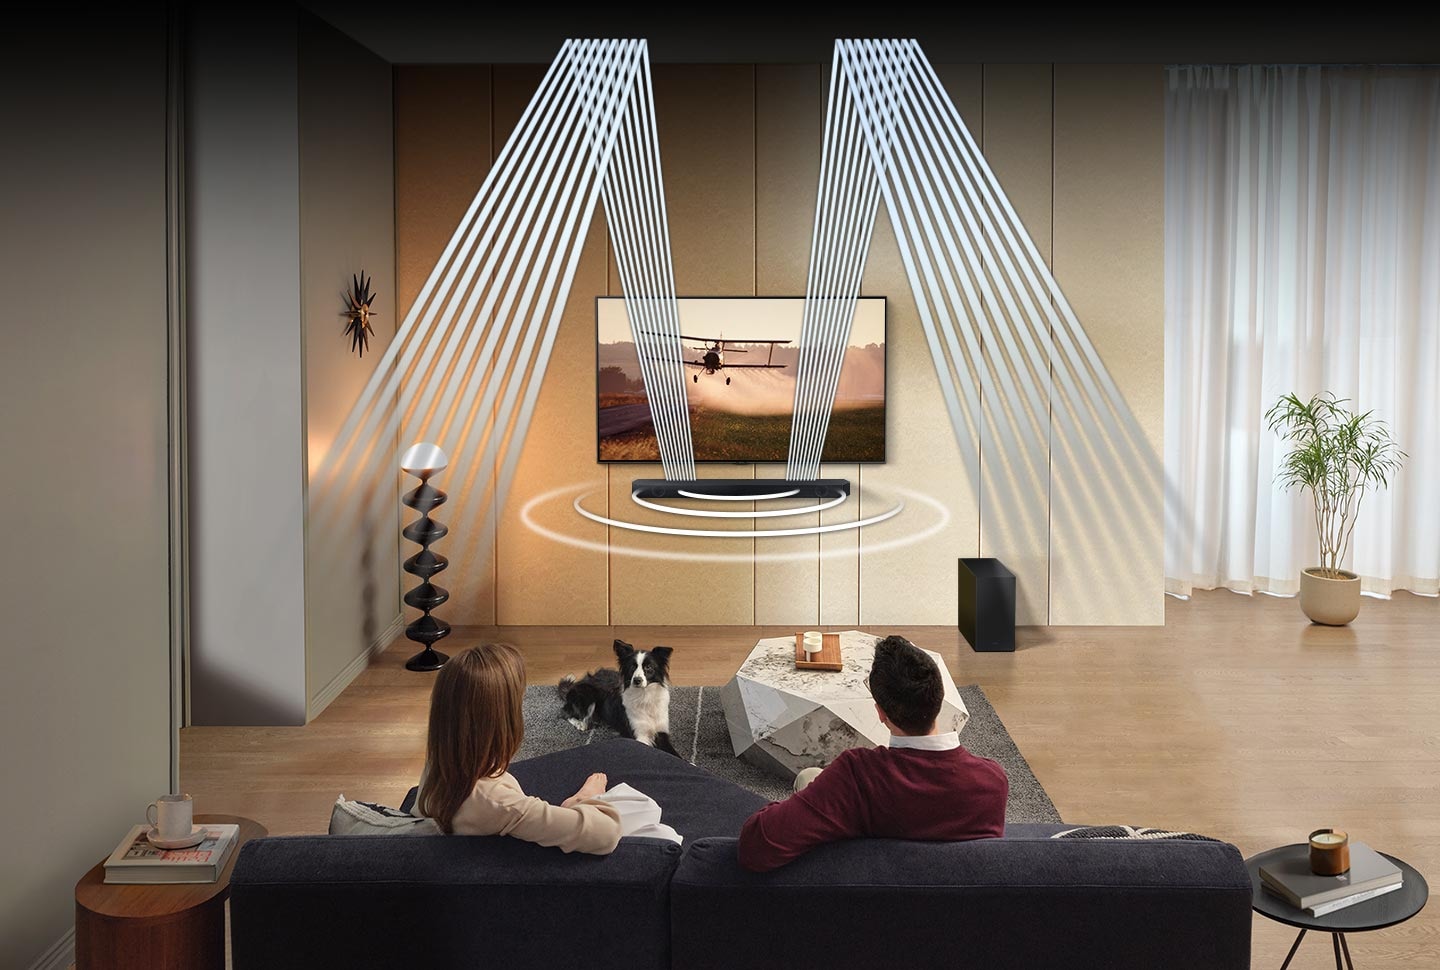 Moški in ženska sedita v dnevni sobi z zvočnimi valovi, ki prihajajo iz sprednjih in navzgor usmerjenih zvočnikov Q600C.